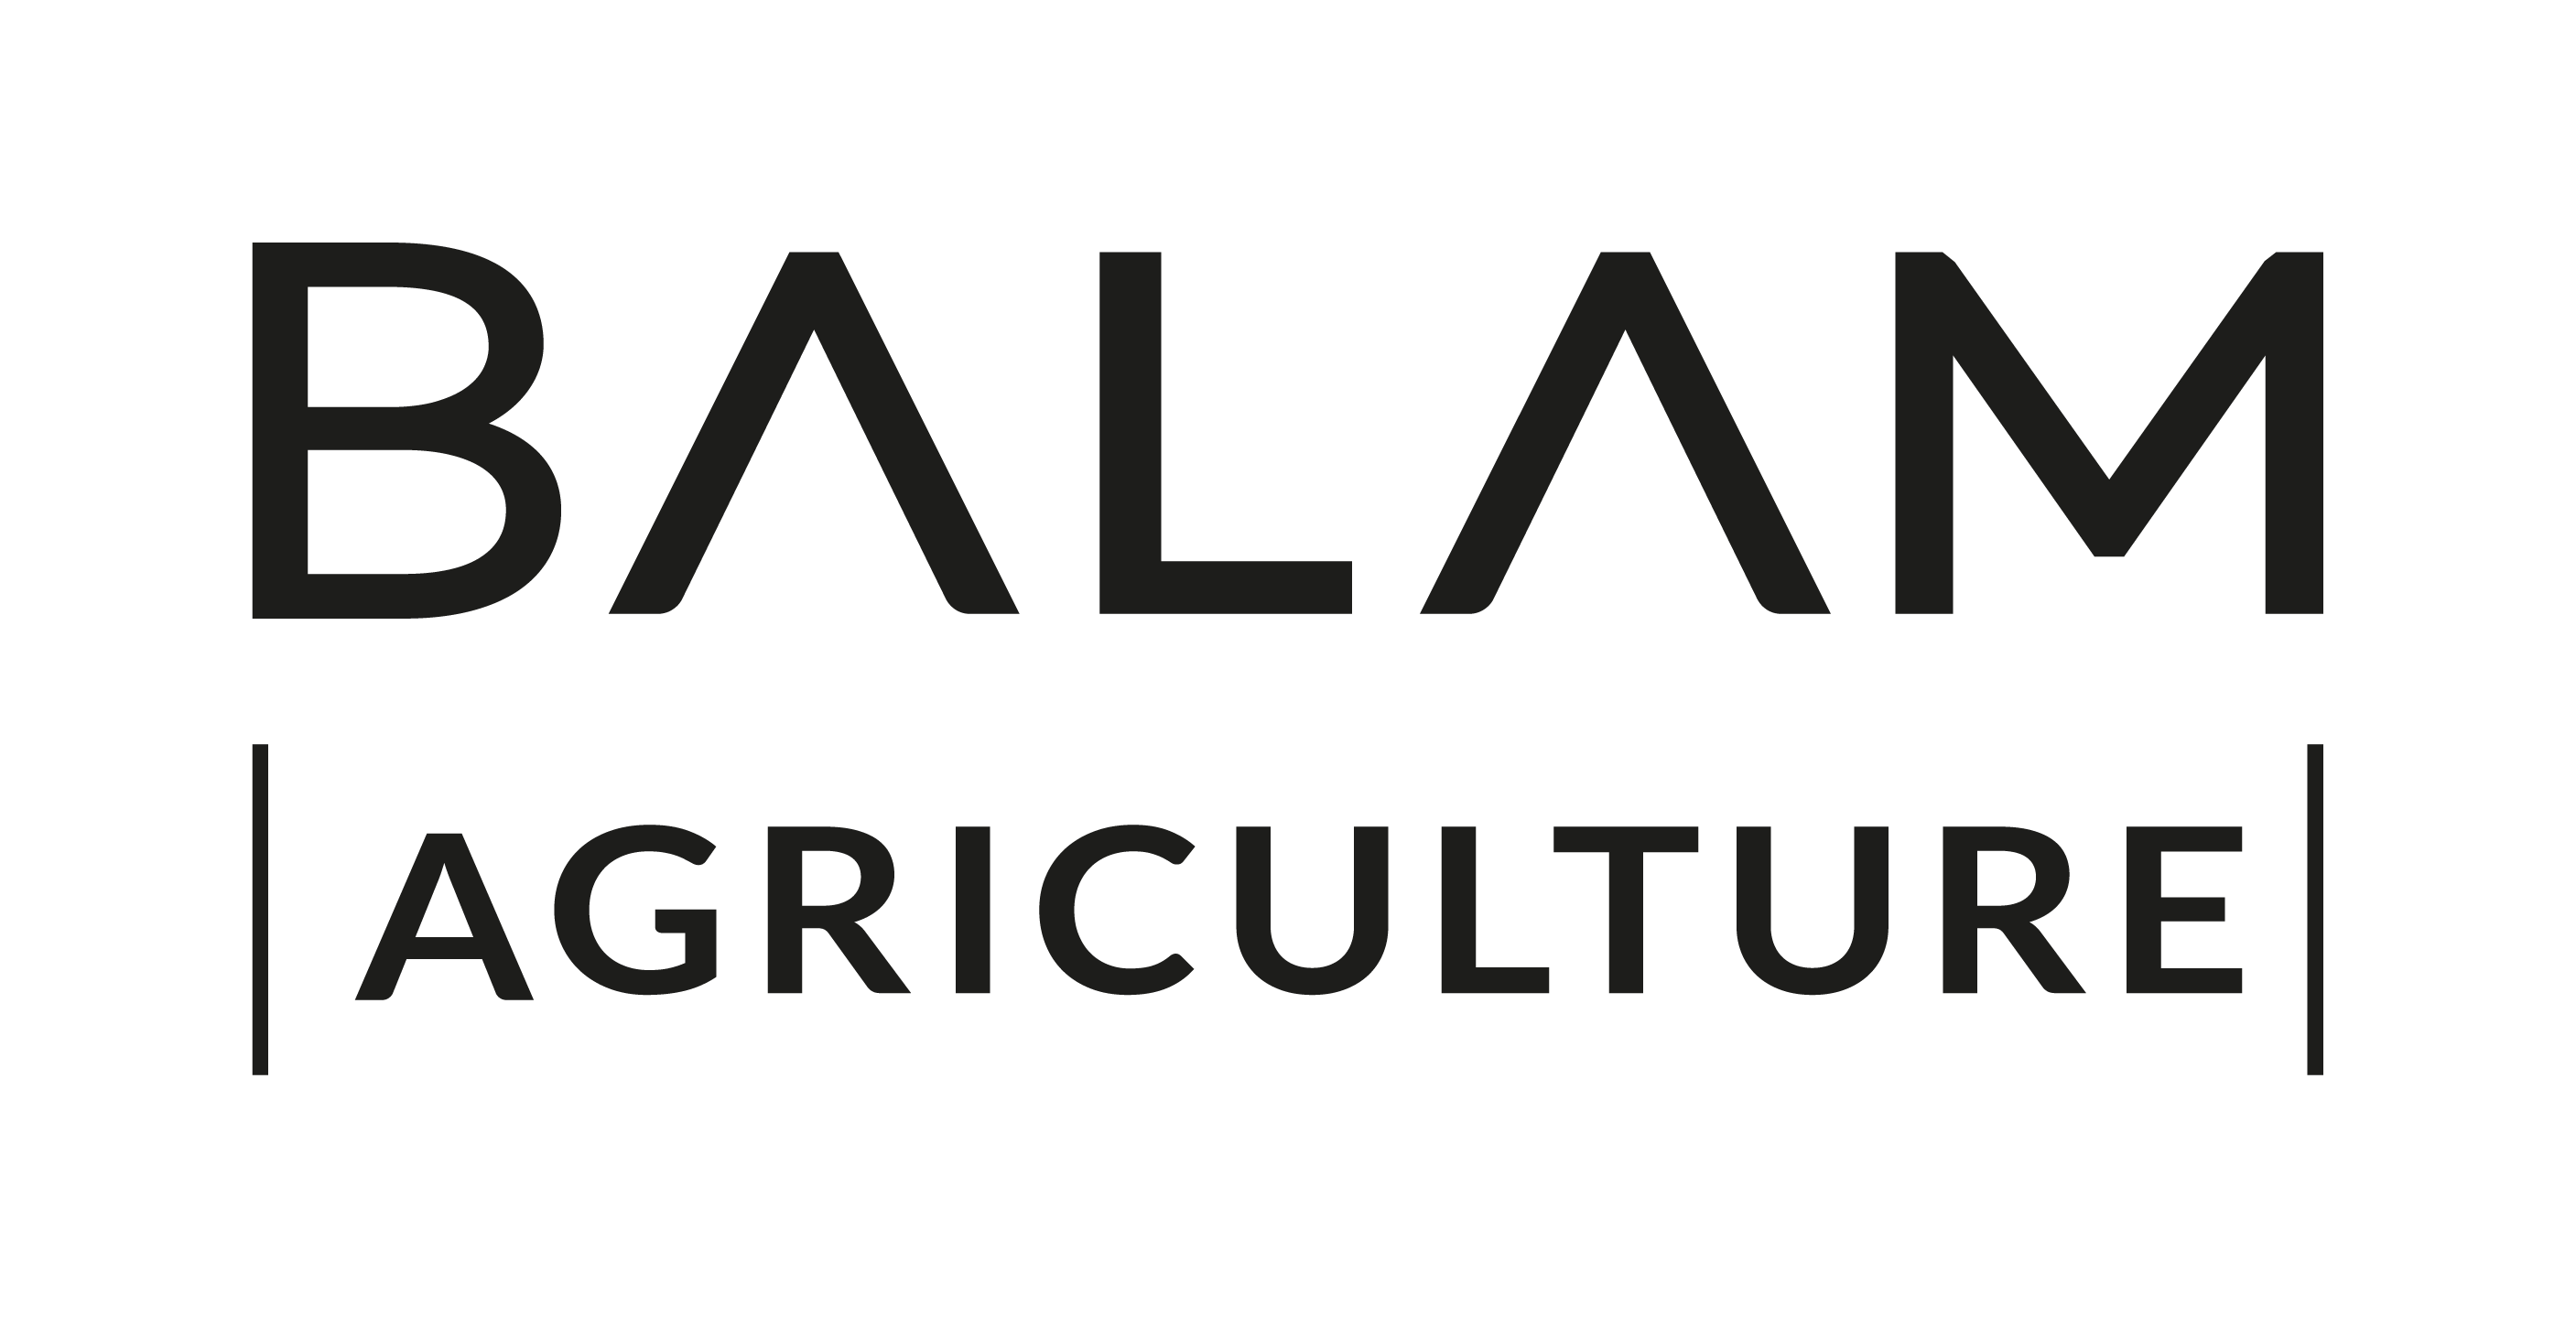 Balam Agriculture